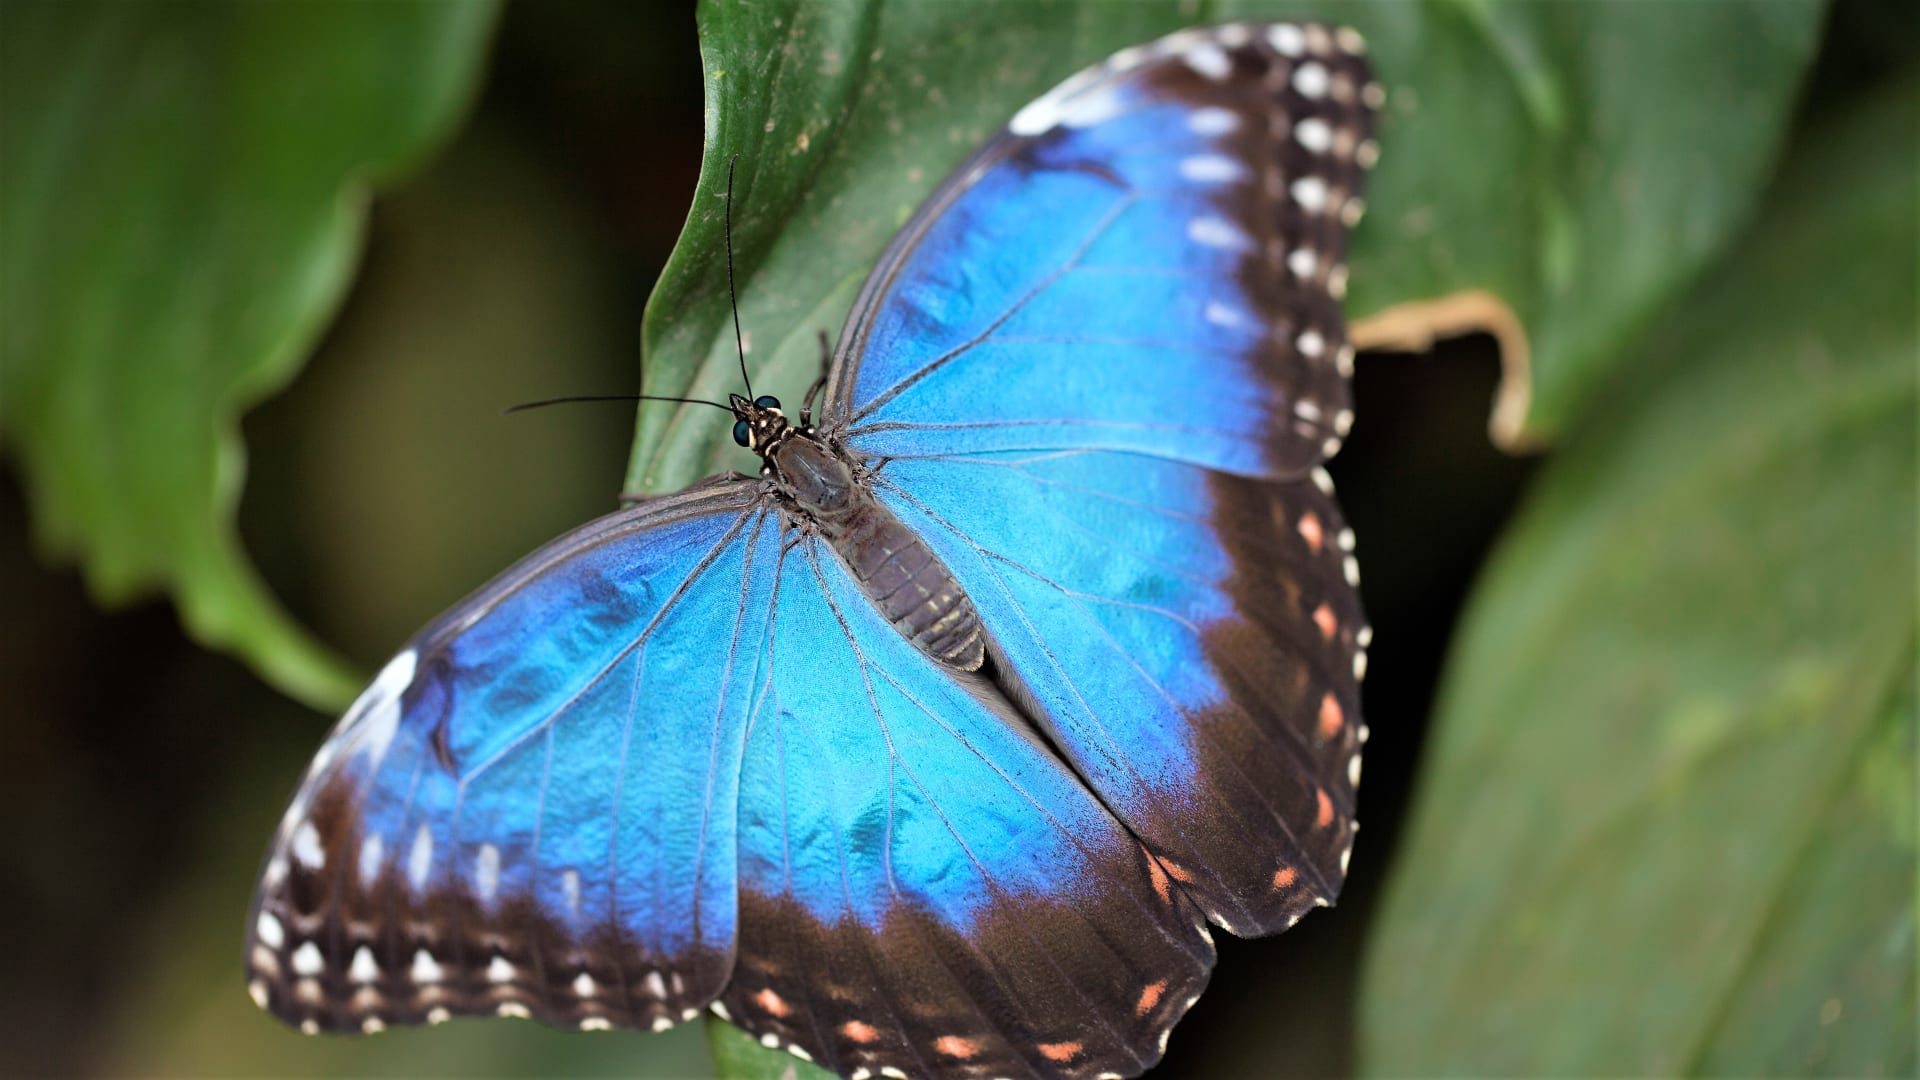 Výstava tropických motýlů ve skleníku Fata Morgana: Morpho peleides má rozpětí křídel má až 12,5 cm!